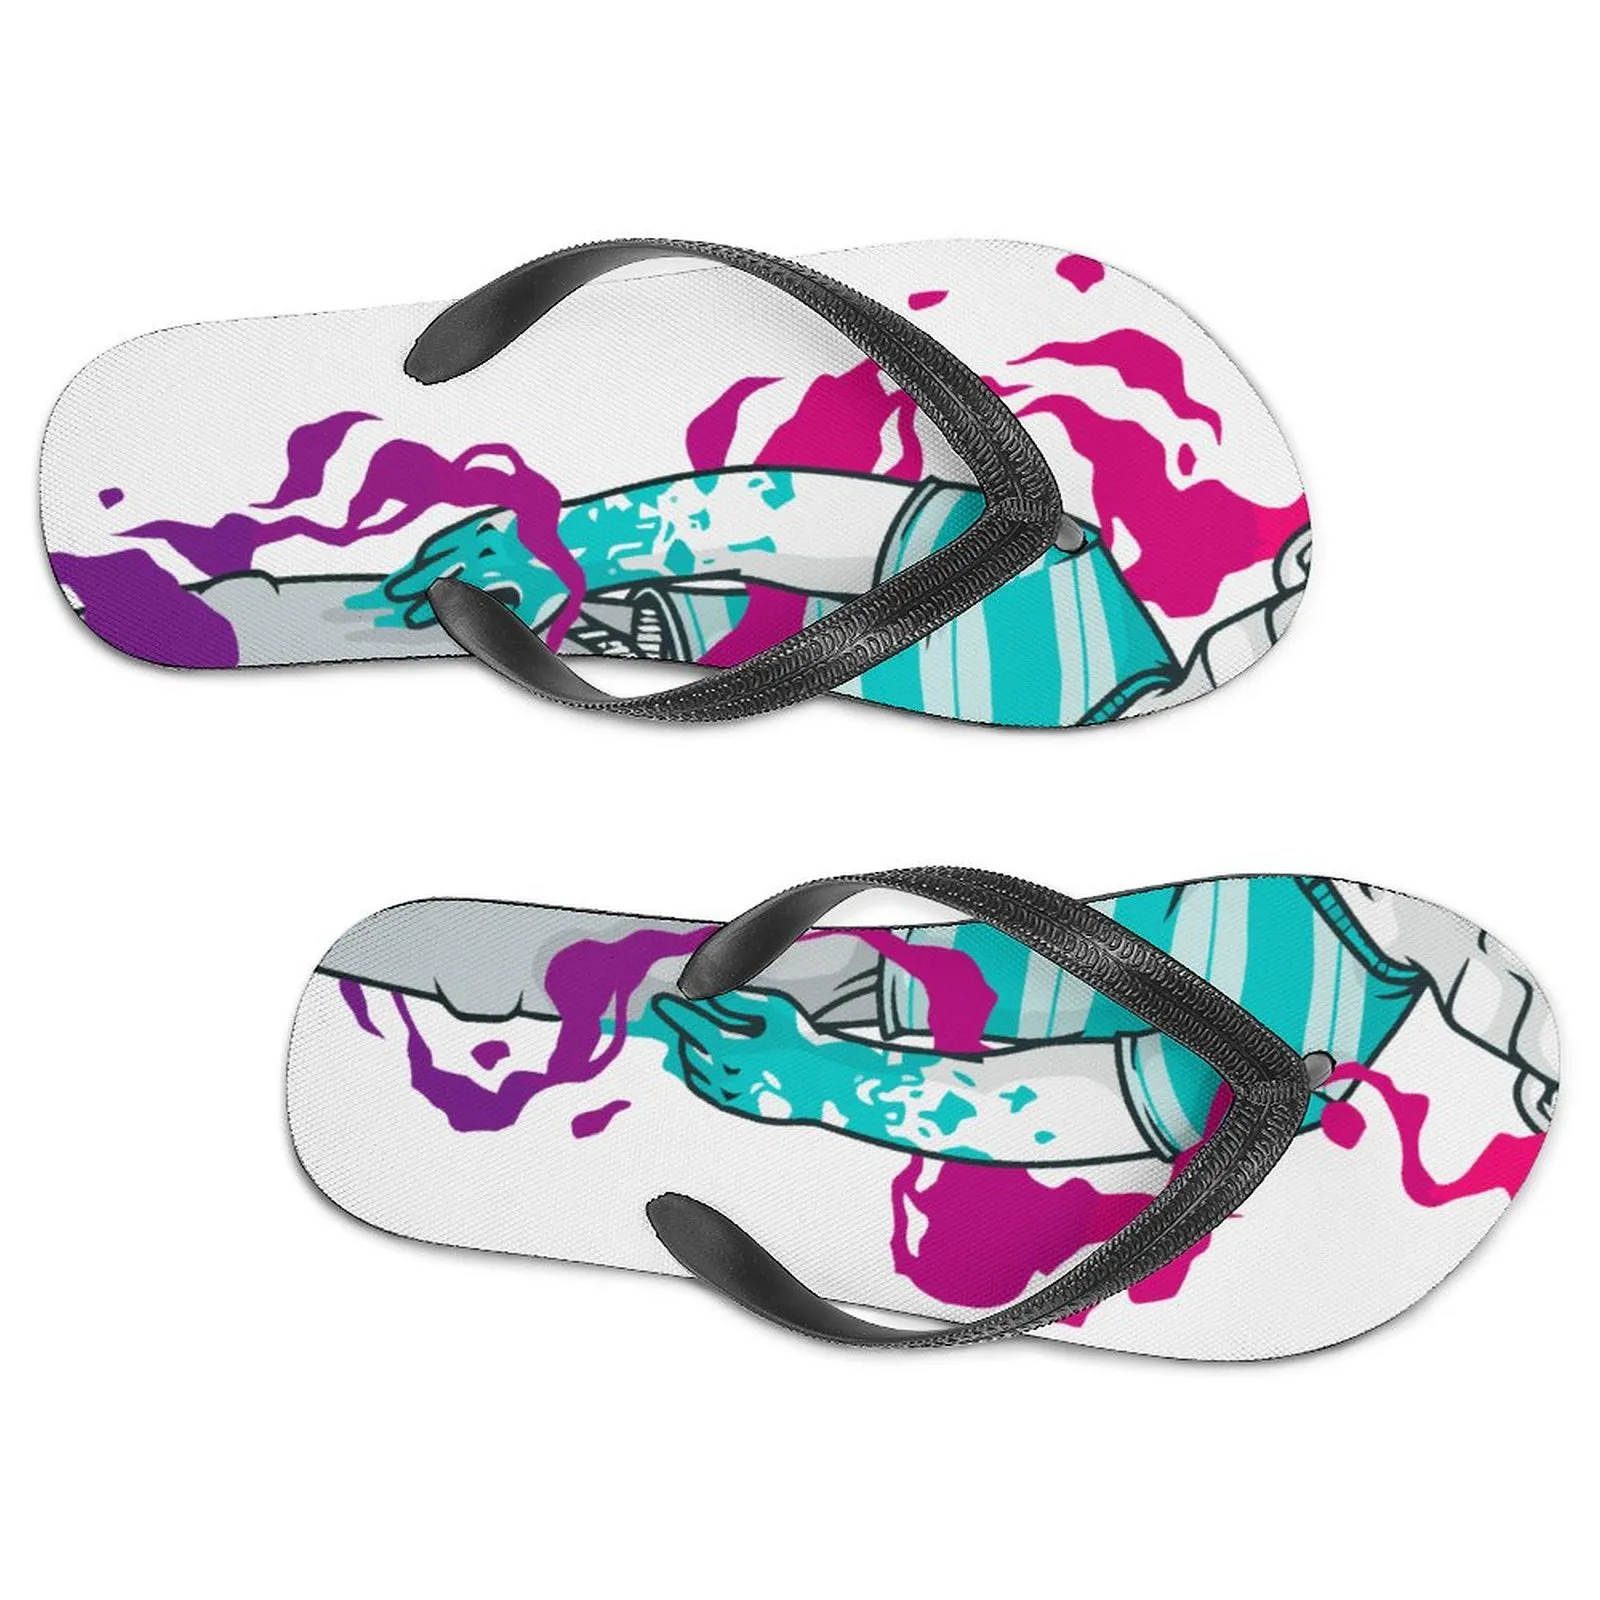 Özel Ayakkabı Erkek Kadınlar Tuval Üzerinde Kayıyor Utdoors Spor Sakinler Özelleştirilmiş Diy Ayakkabı Spor Eğitmenleri Klasik Spor Sneaker Erkek Nefes Alabaş Chaussures Eur 39-46 Sdafxzda